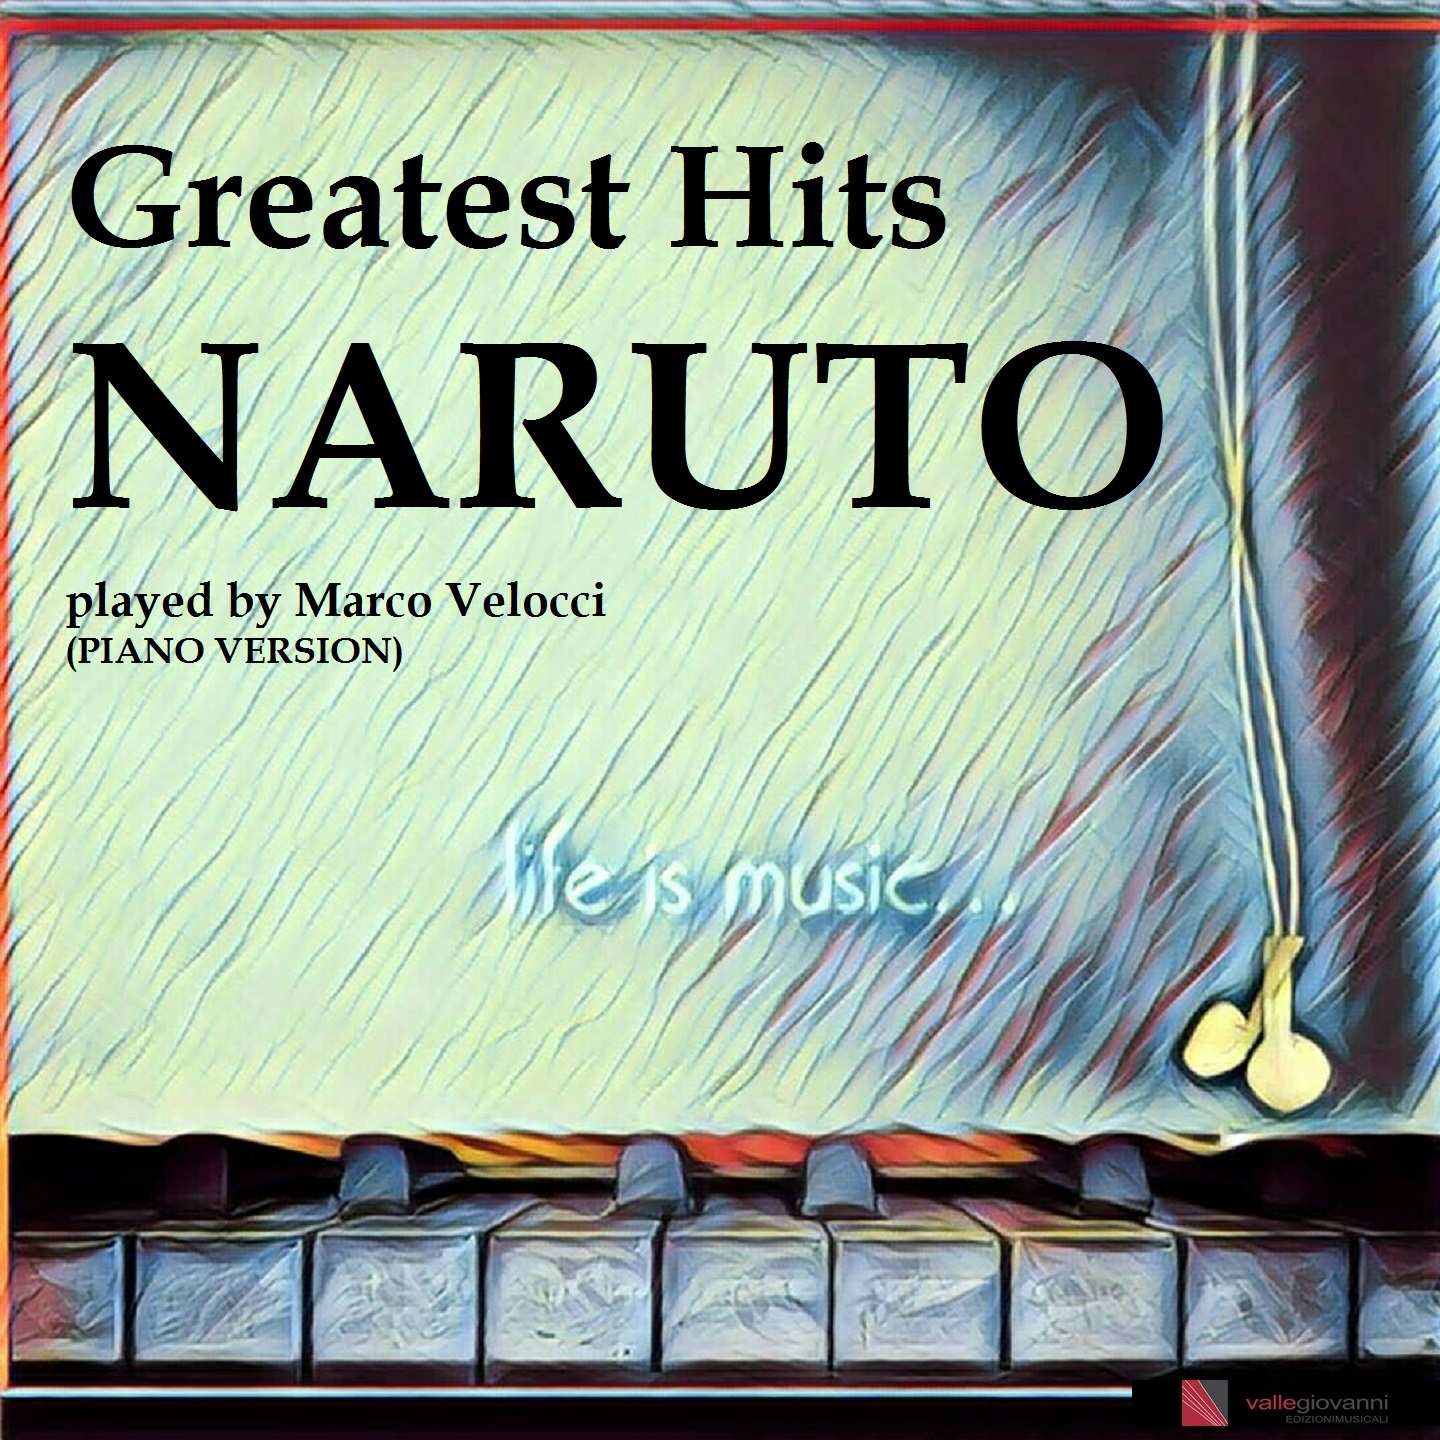 Naruto Greatest Hits